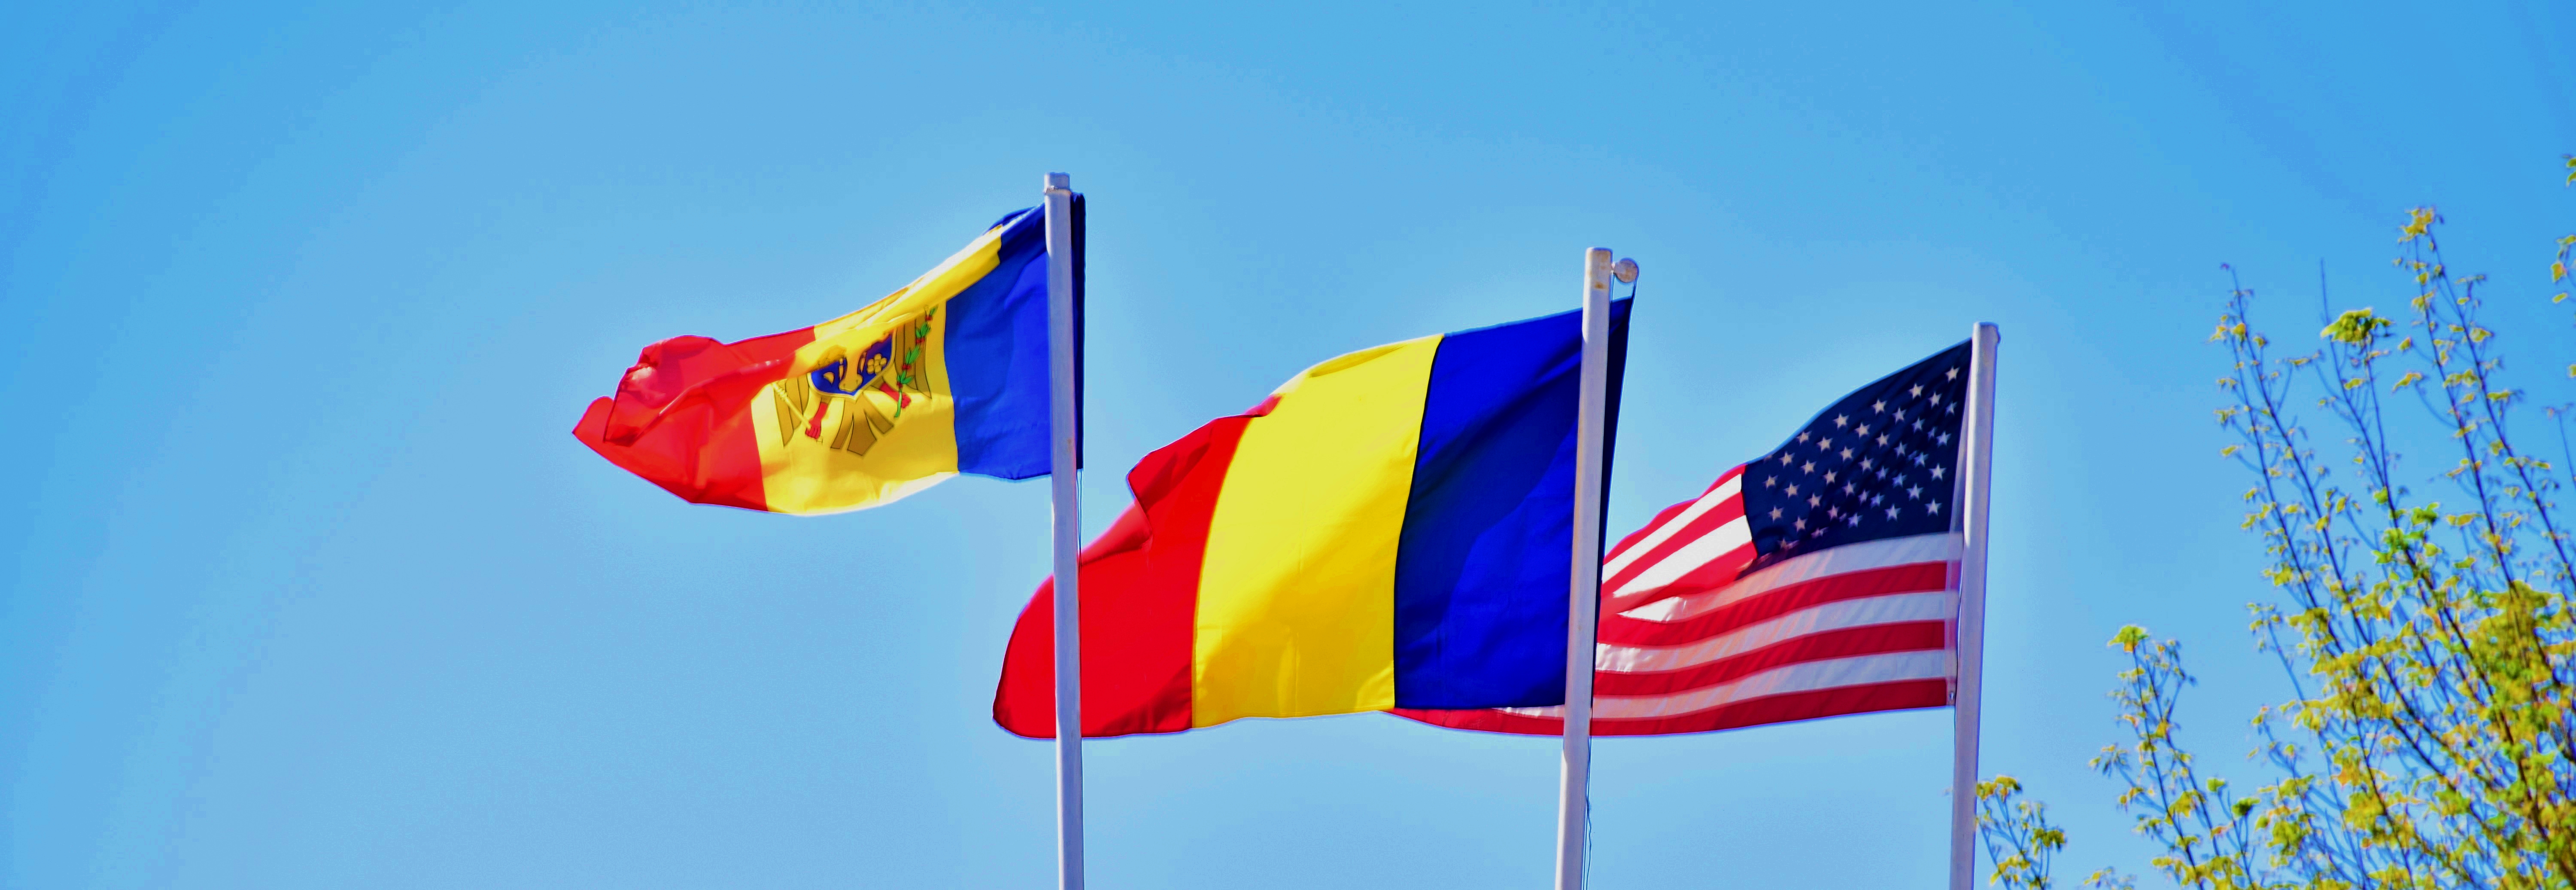 NATO e-n corzi in Republica Moldova. Cetățenii de peste Prut nici nu vor s-audă de baze americane la ei in țară!